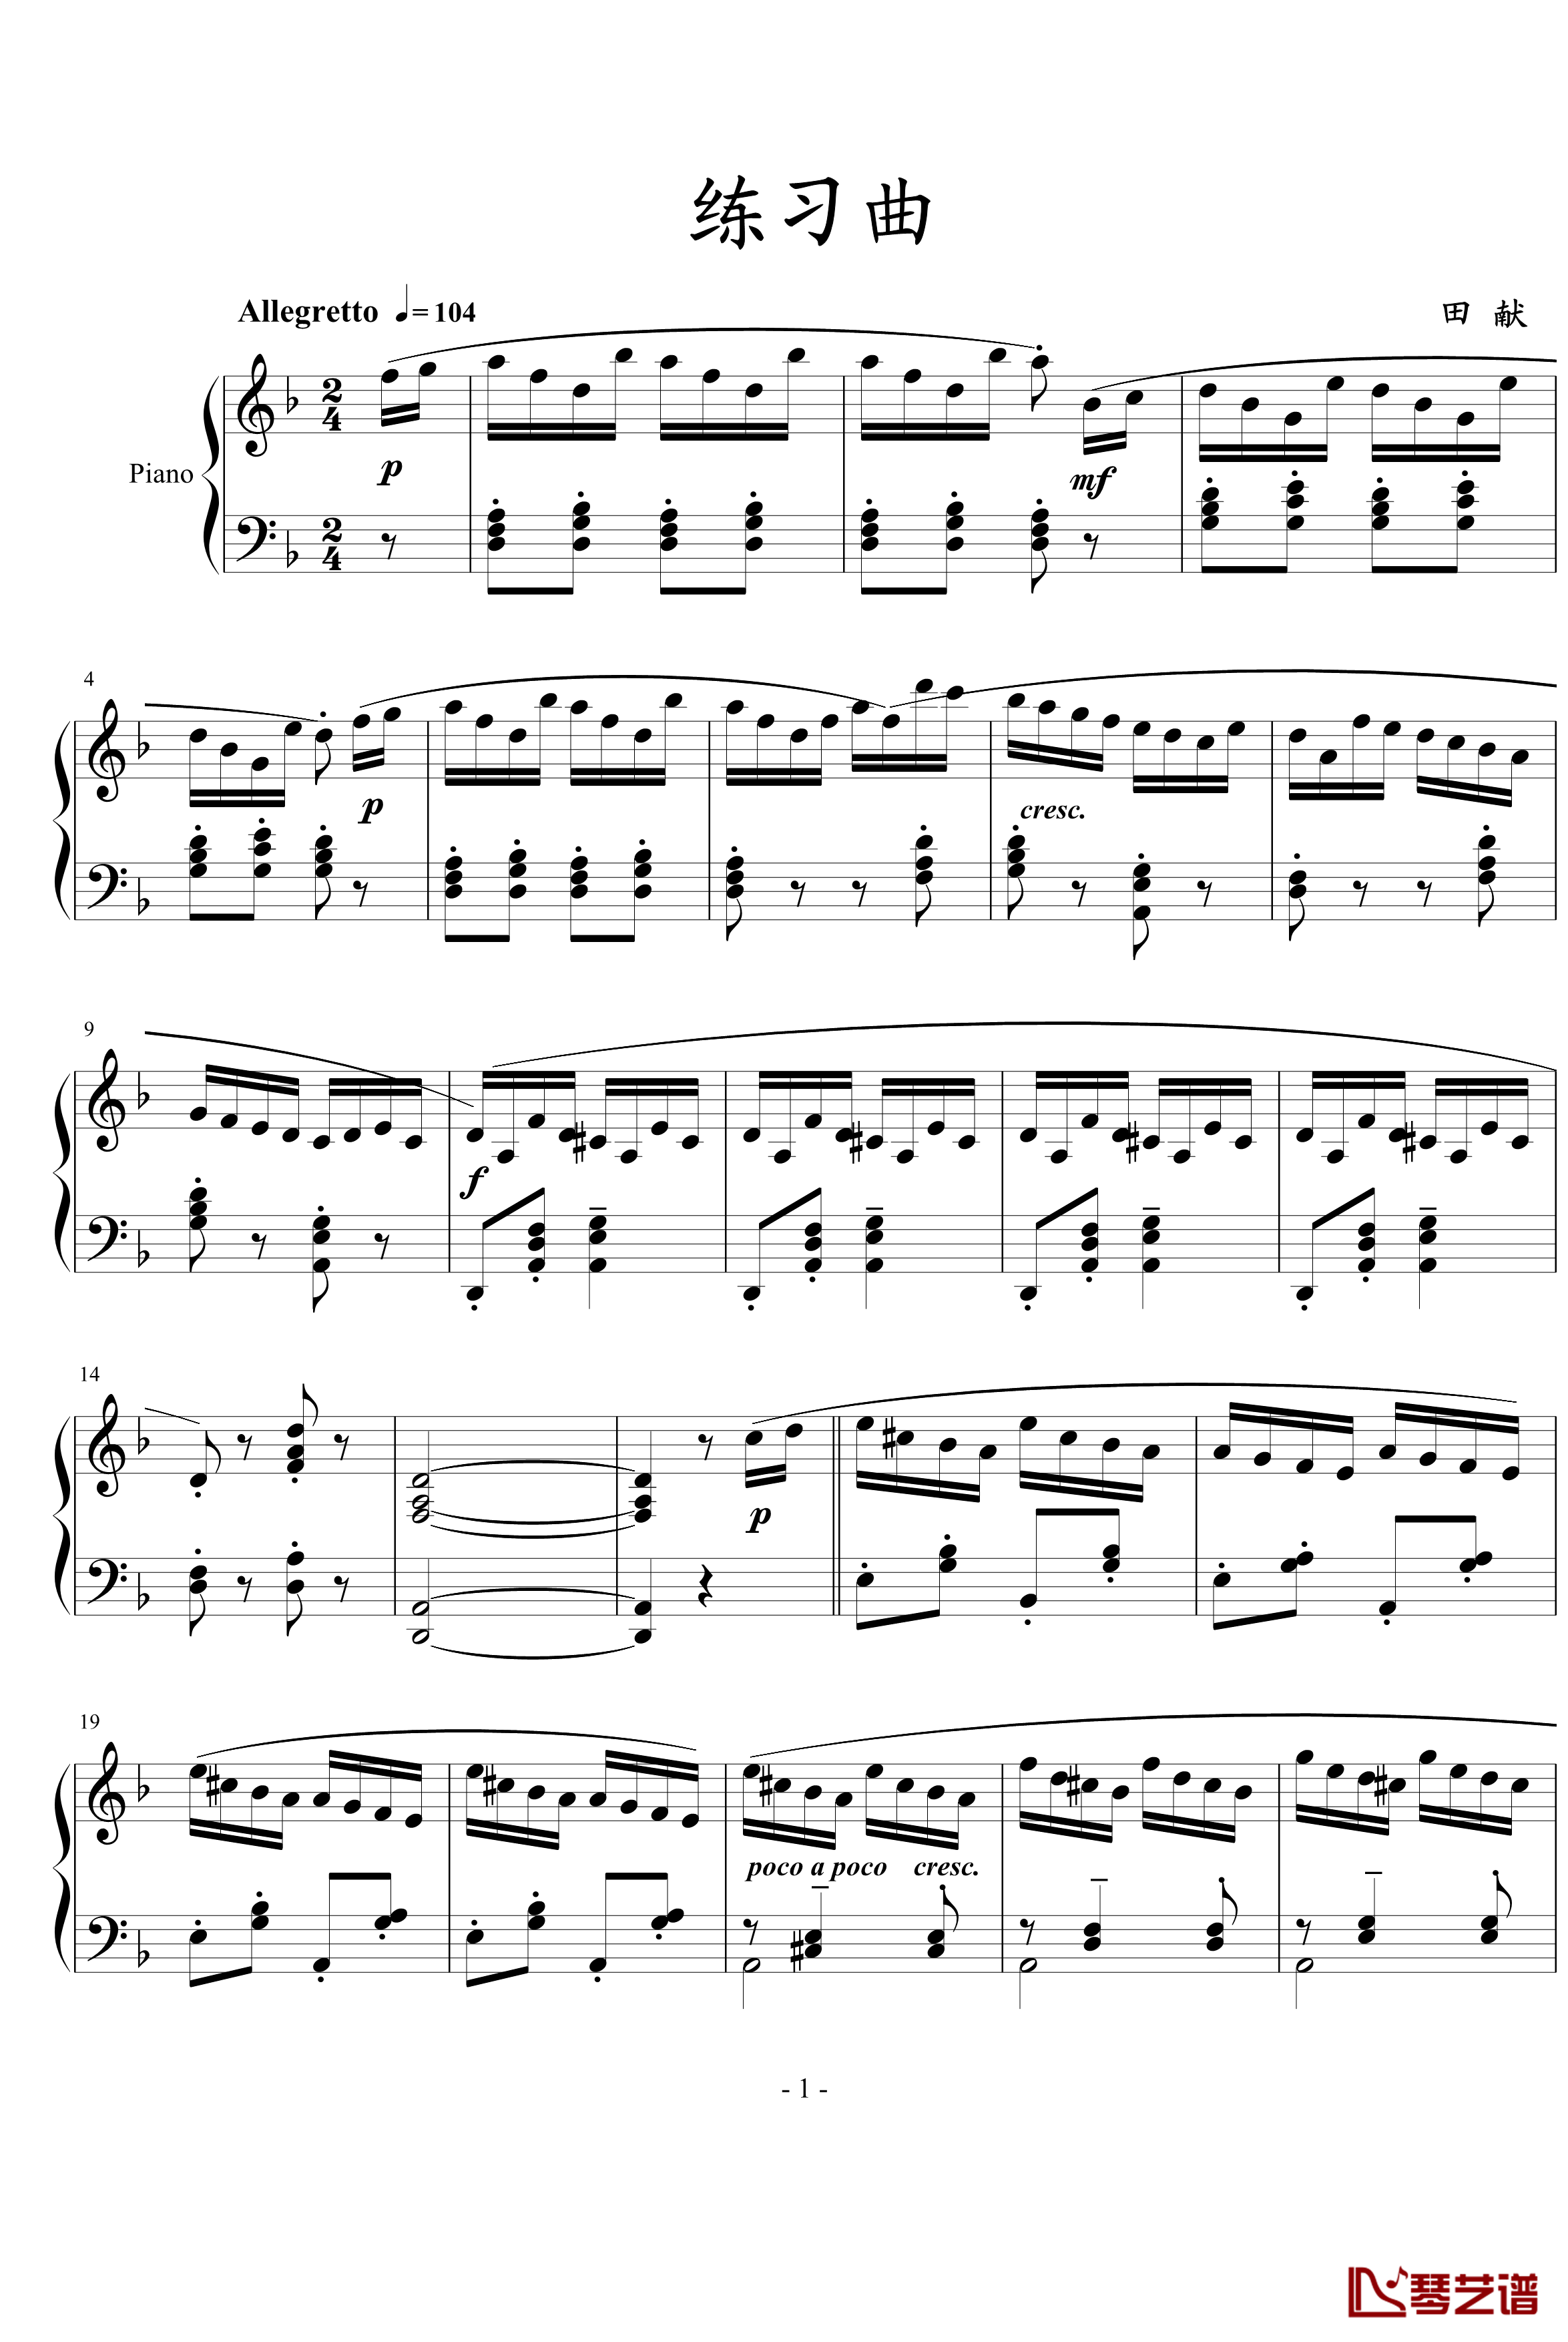 练习曲钢琴谱-田献1